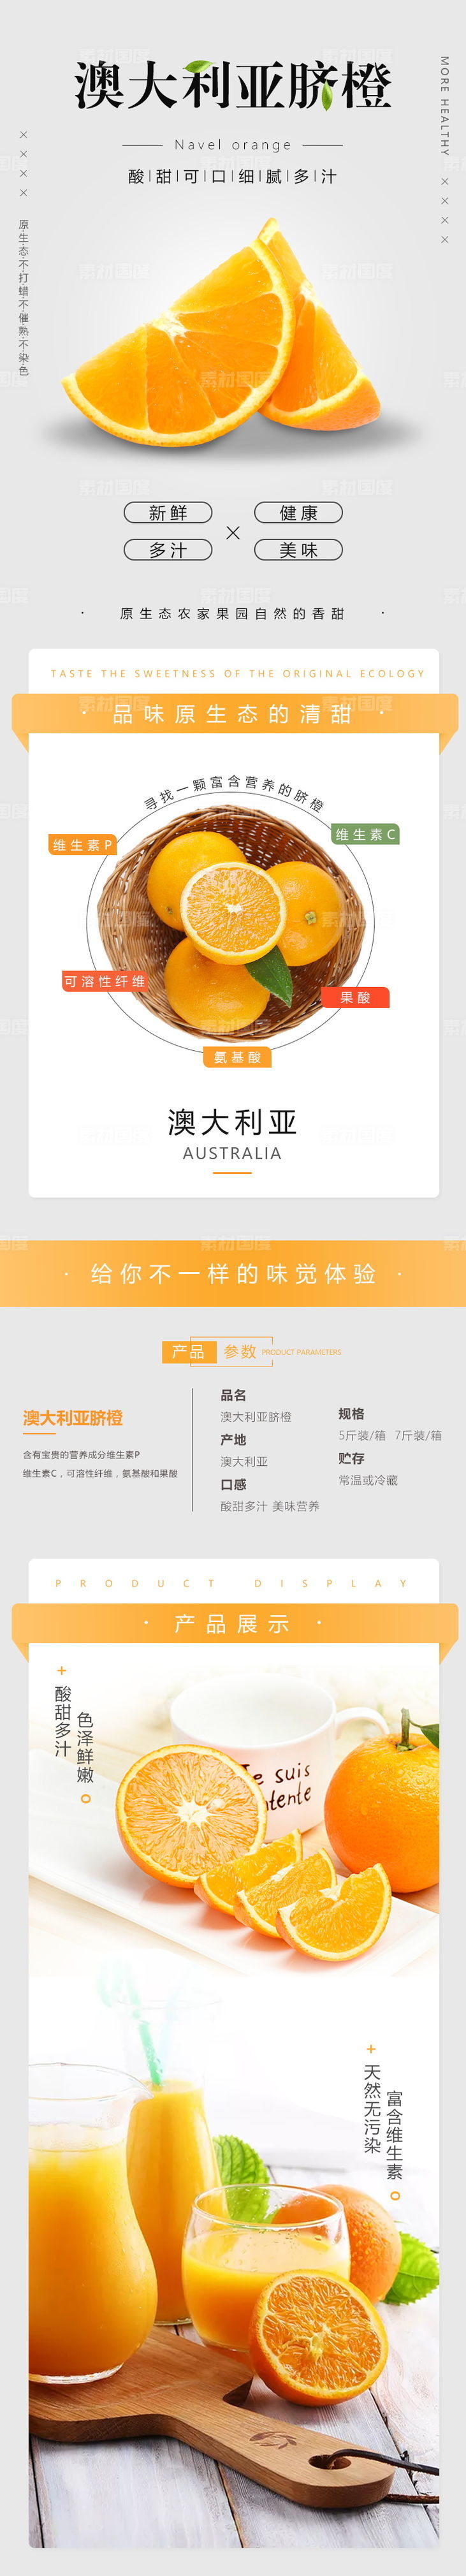 澳大利亚脐橙网页详情图